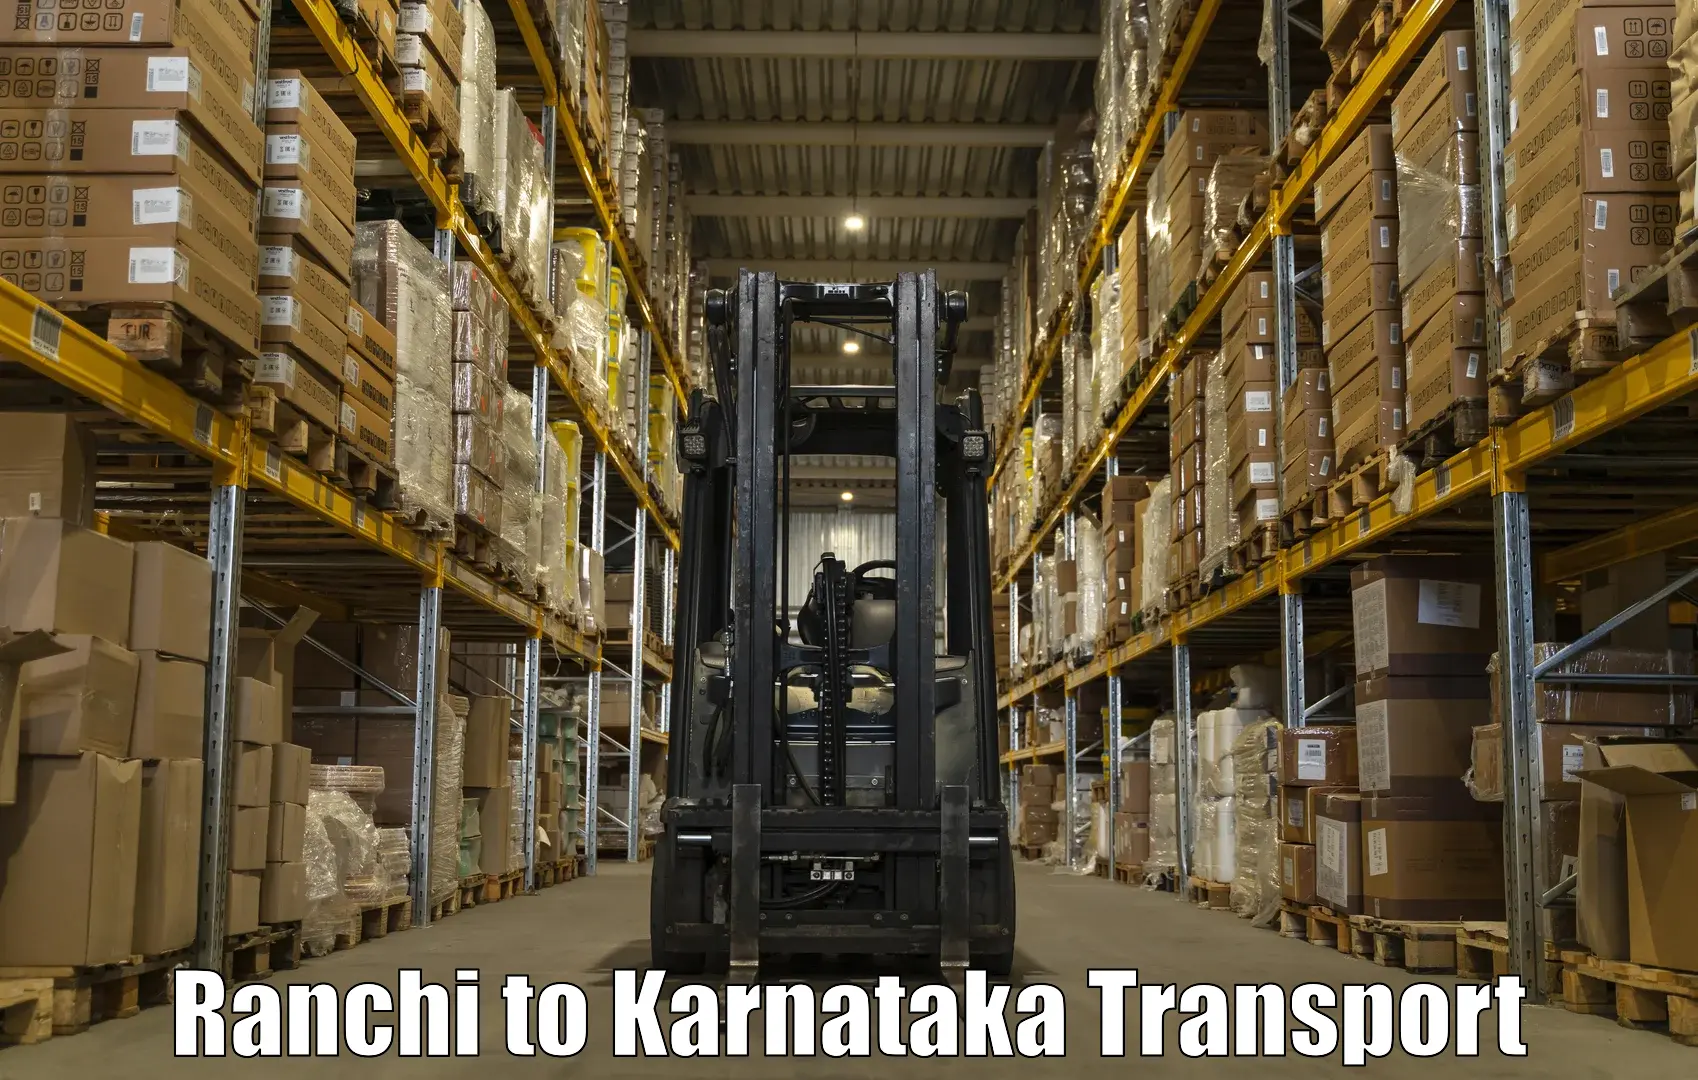 Daily transport service Ranchi to Maramanahalli